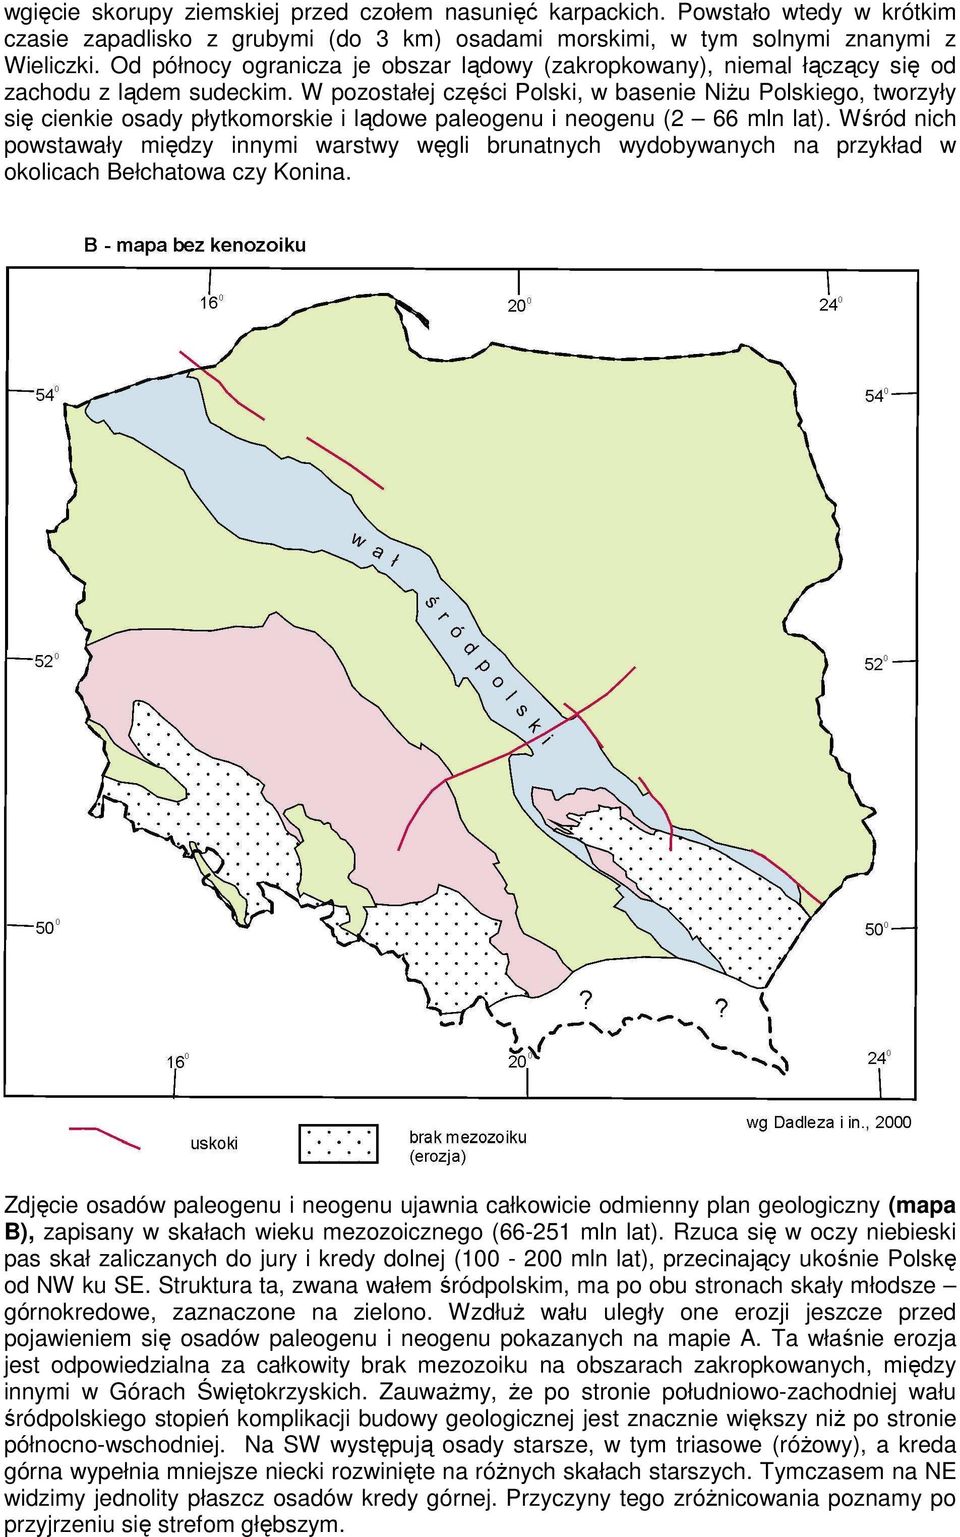 W pozostałej części Polski, w basenie NiŜu Polskiego, tworzyły się cienkie osady płytkomorskie i lądowe paleogenu i neogenu (2 66 mln lat).